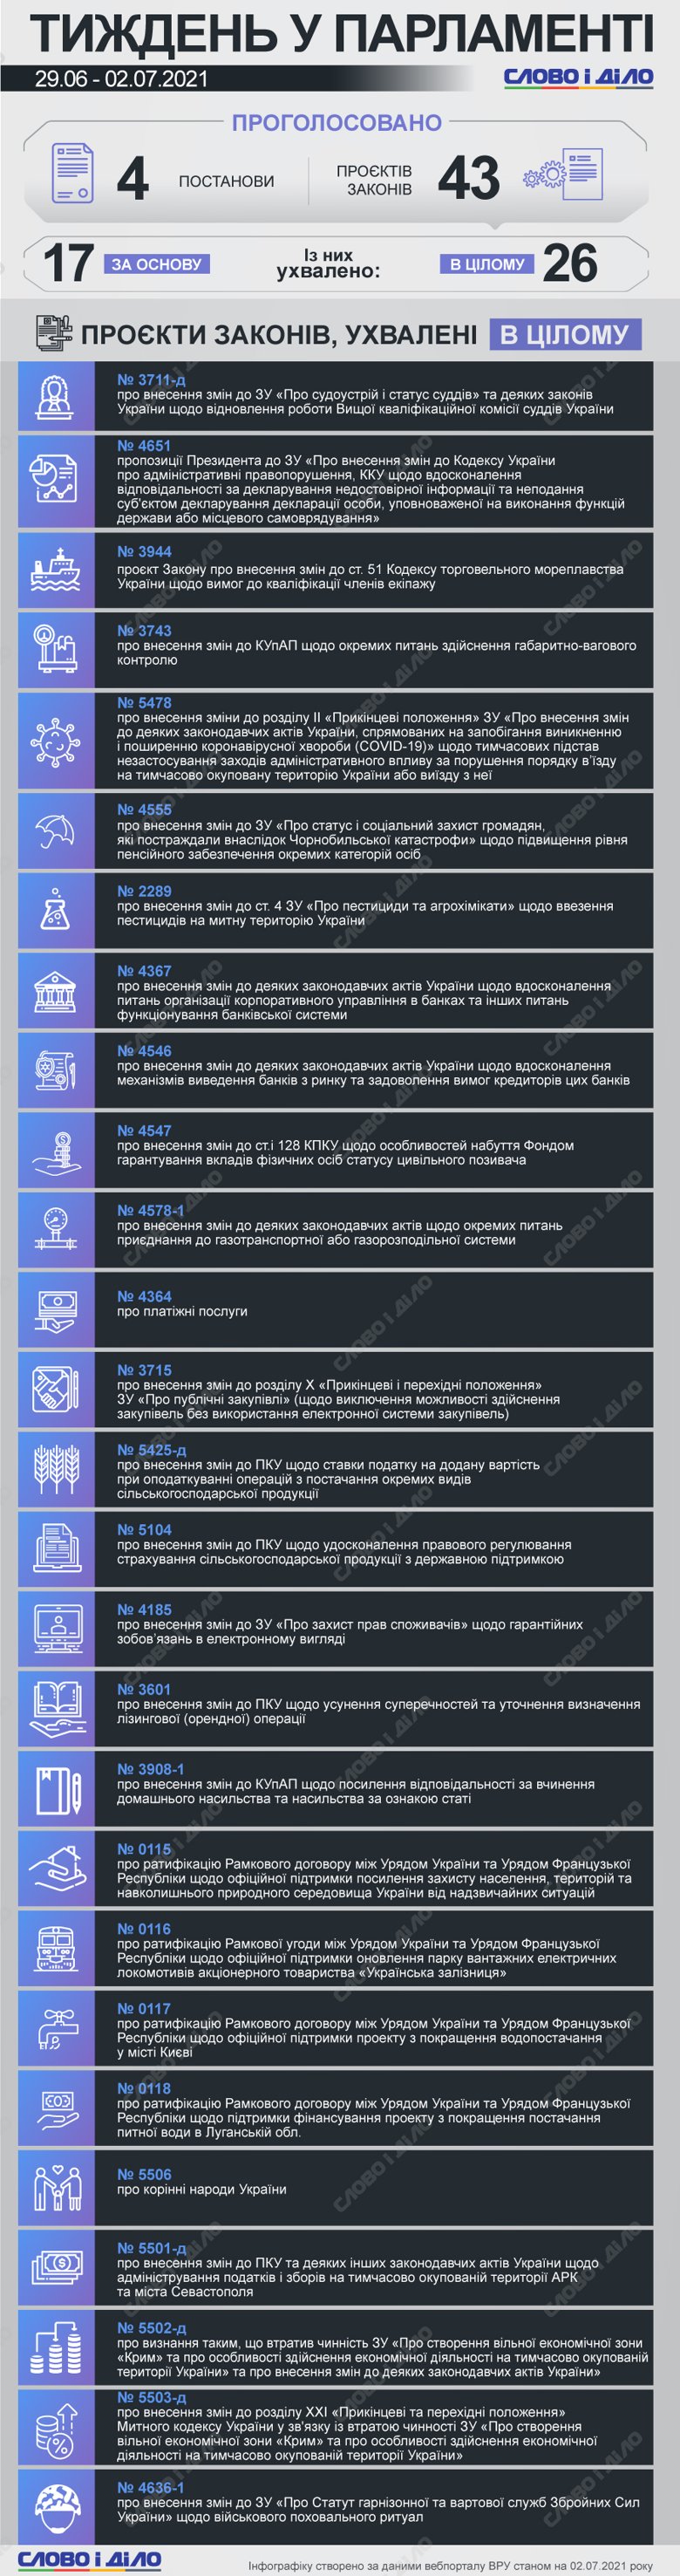 Верховная рада за неделю приняла 4 постановления и 43 законопроекта. Подробнее – на инфографике.